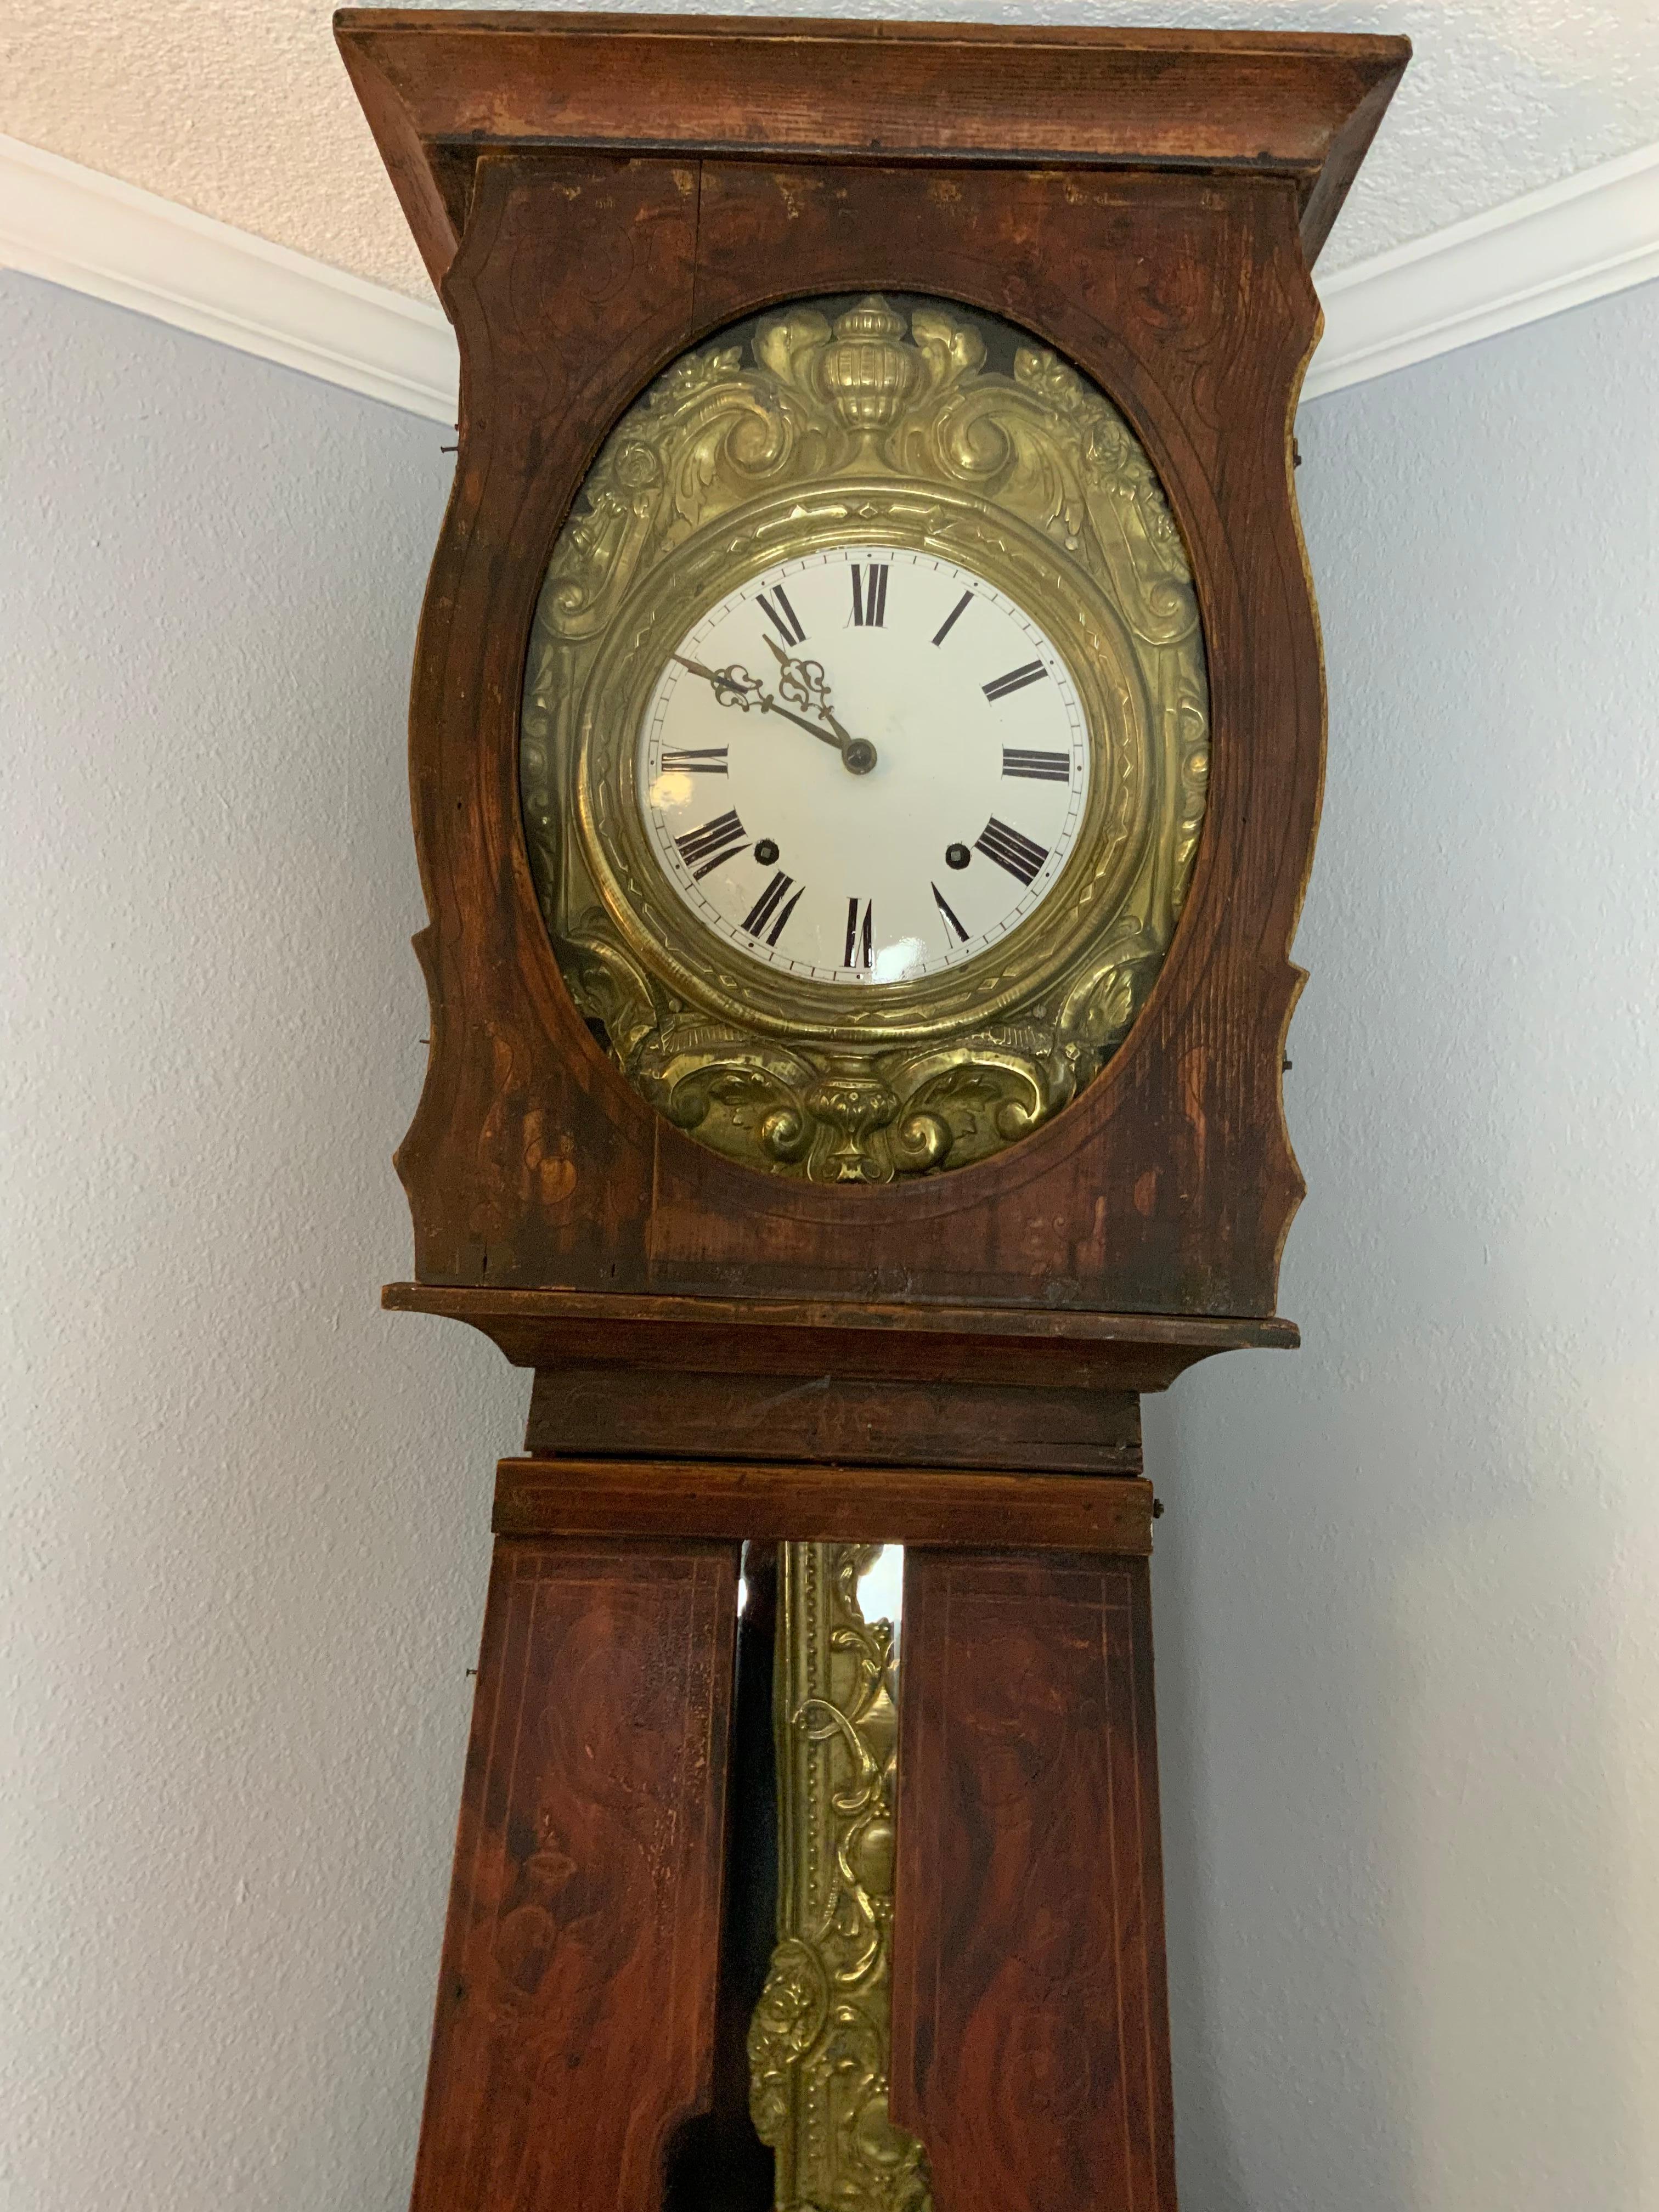 Très belle horloge Comtoise Morbier dans une boîte en pin décorée de peinture florale, France - fin du 19ème siècle. Sonneries à l'heure et deux minutes après l'heure et un seul coup à la demi-heure.  Le mouvement est très bien réglé et fonctionne